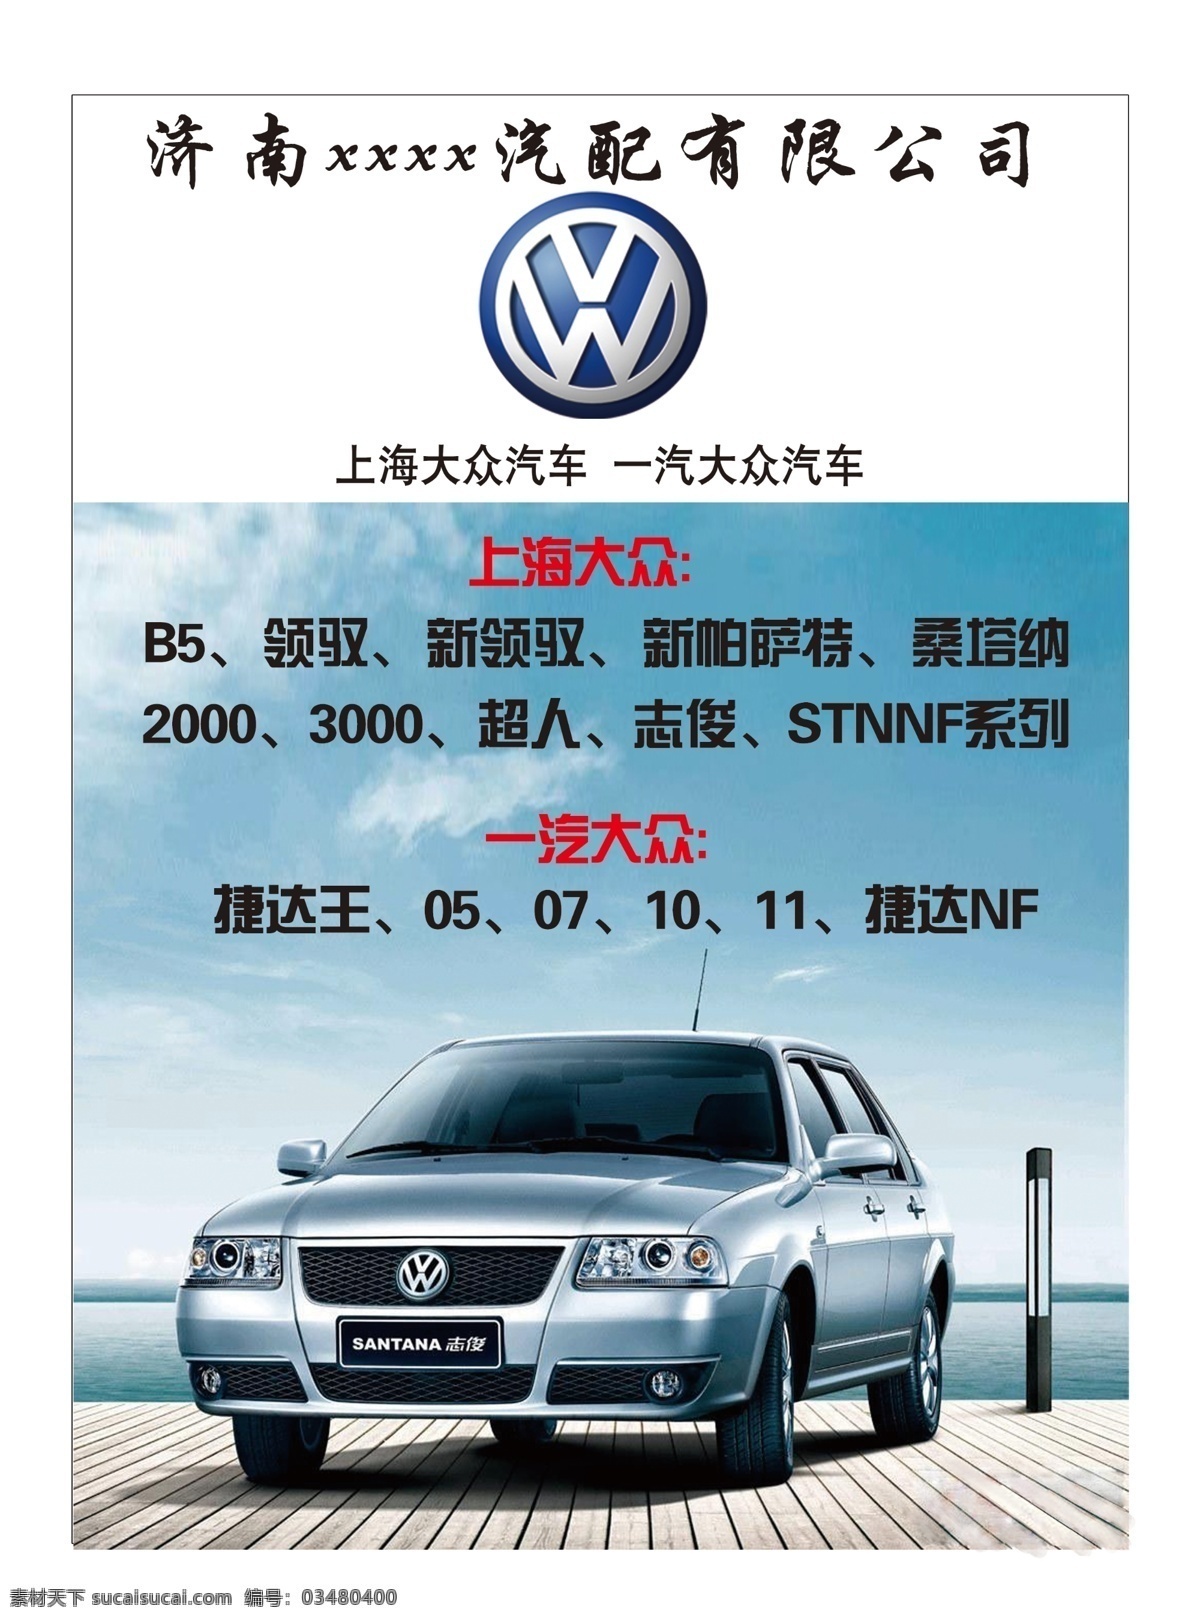 大众 大众汽车 一汽大众 上海大众 广告设计模板 源文件